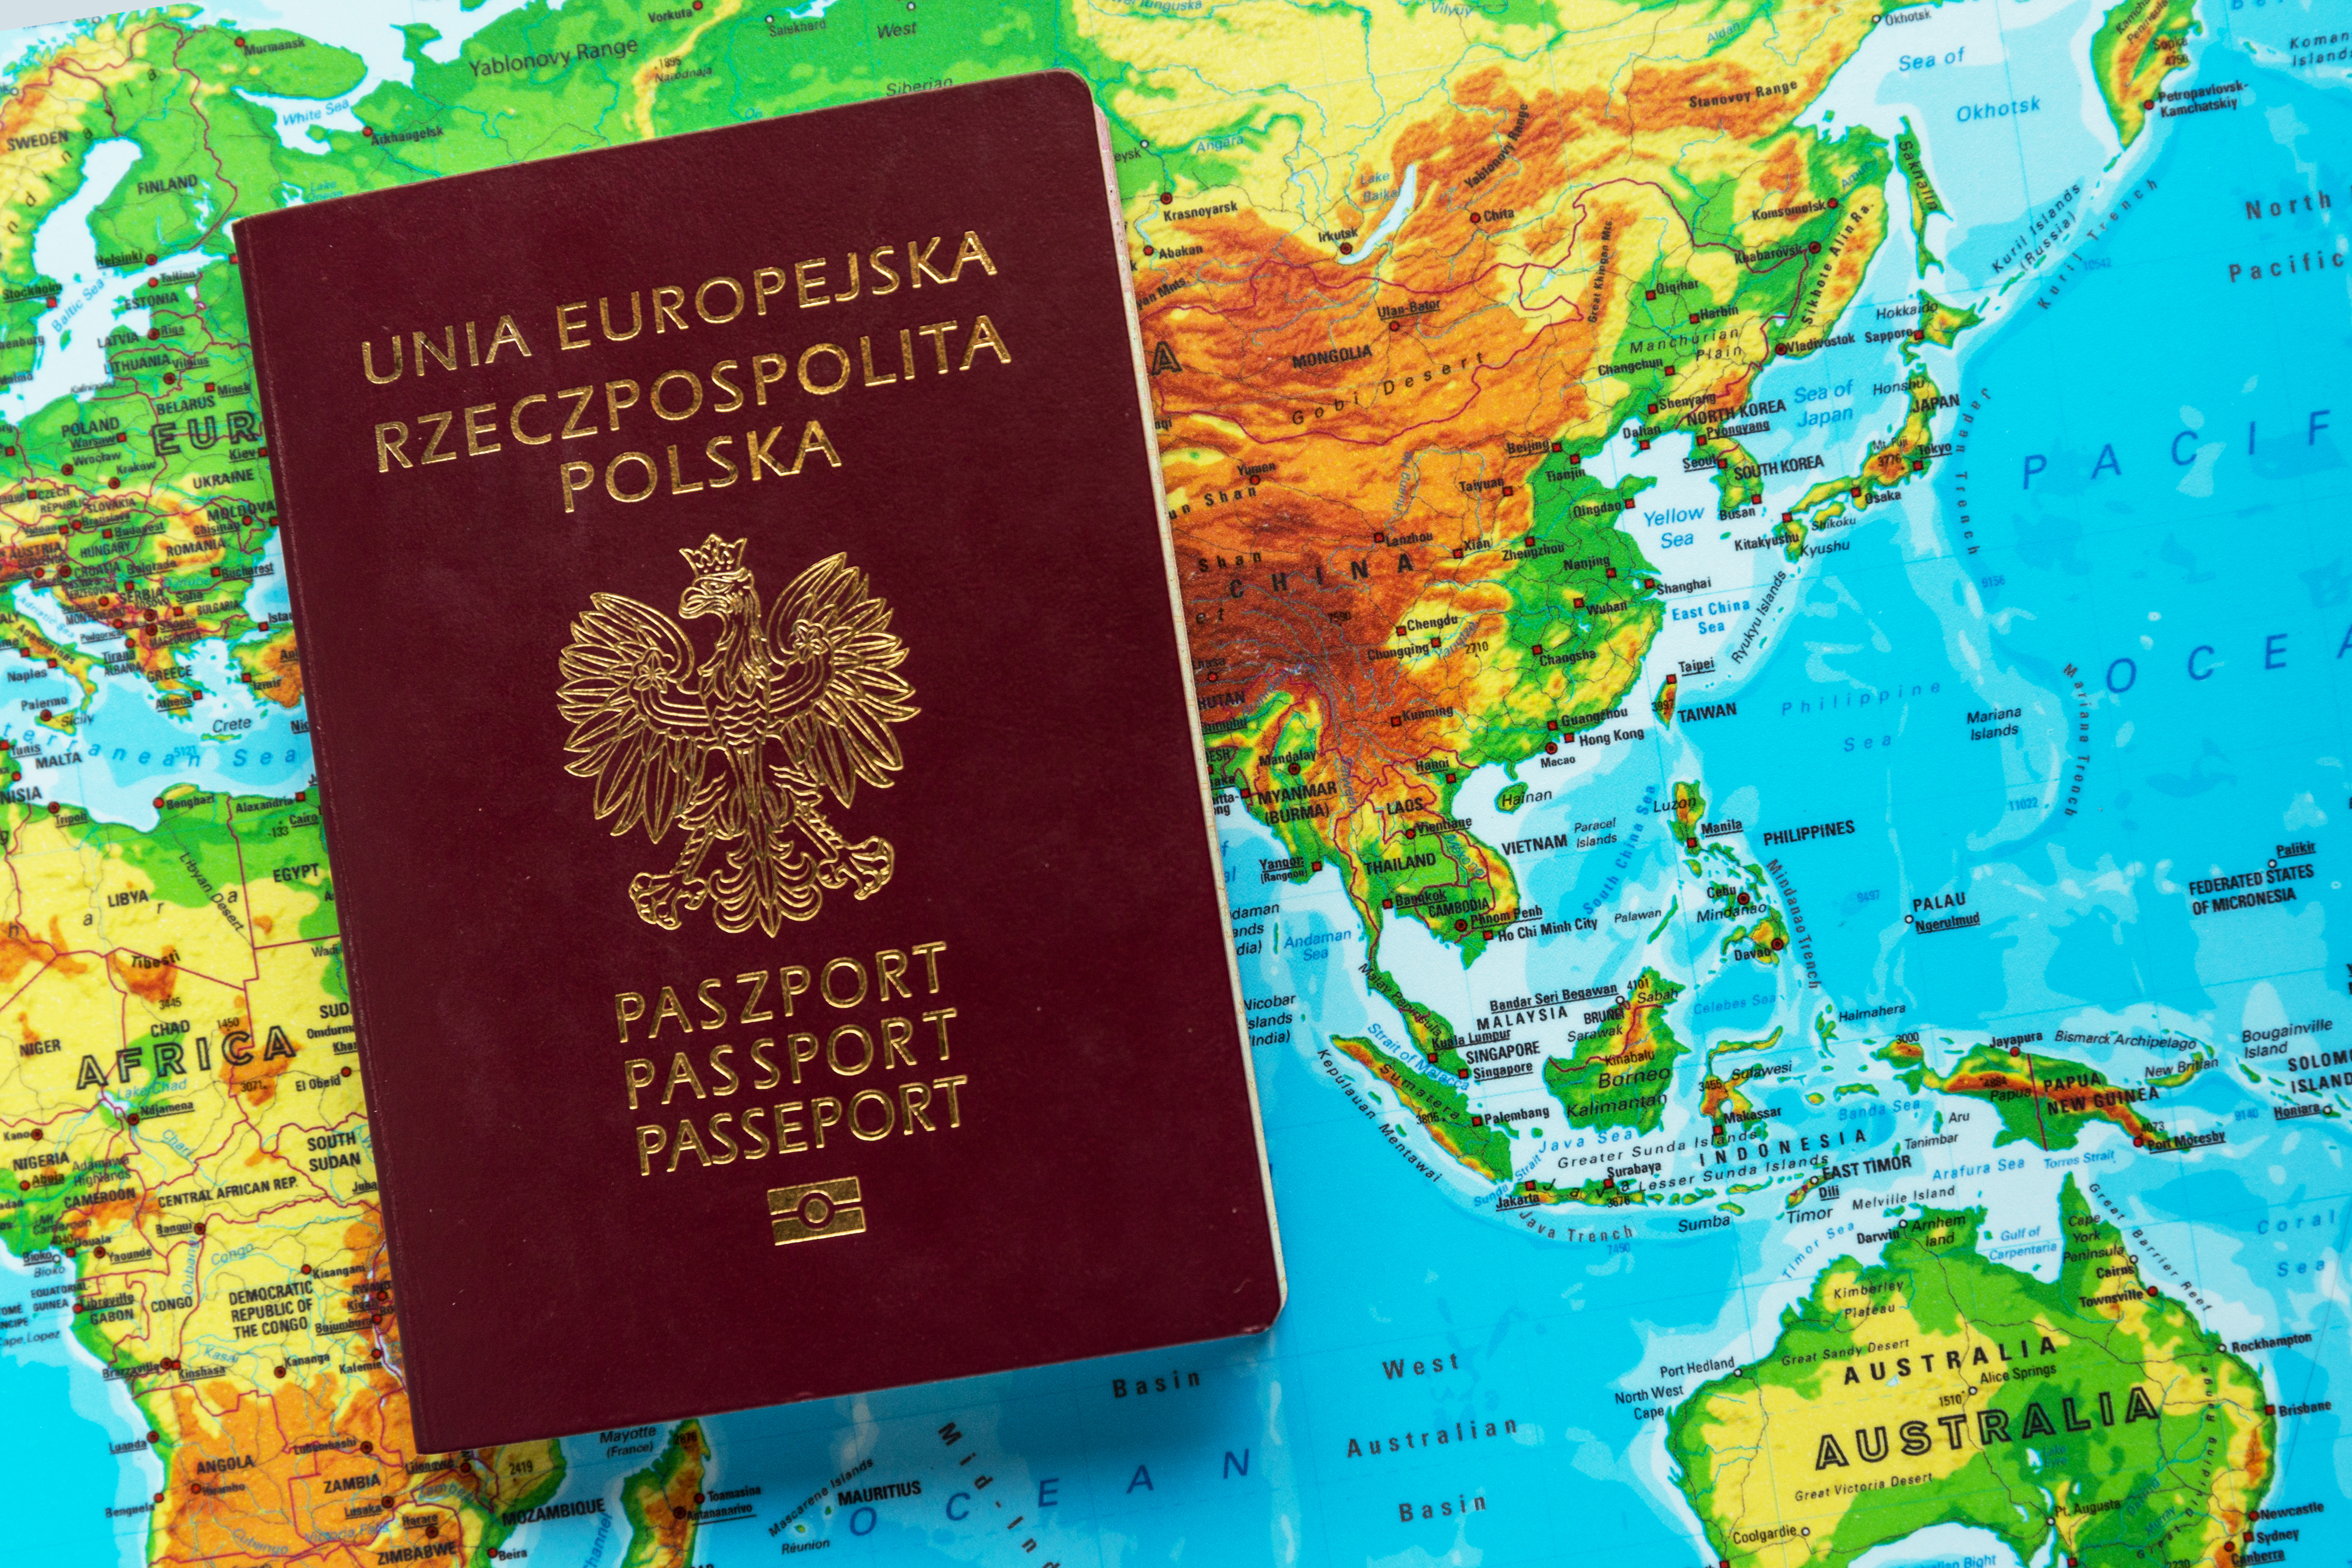 Паспорт Польши на карте Европы, который означает польское гражданство